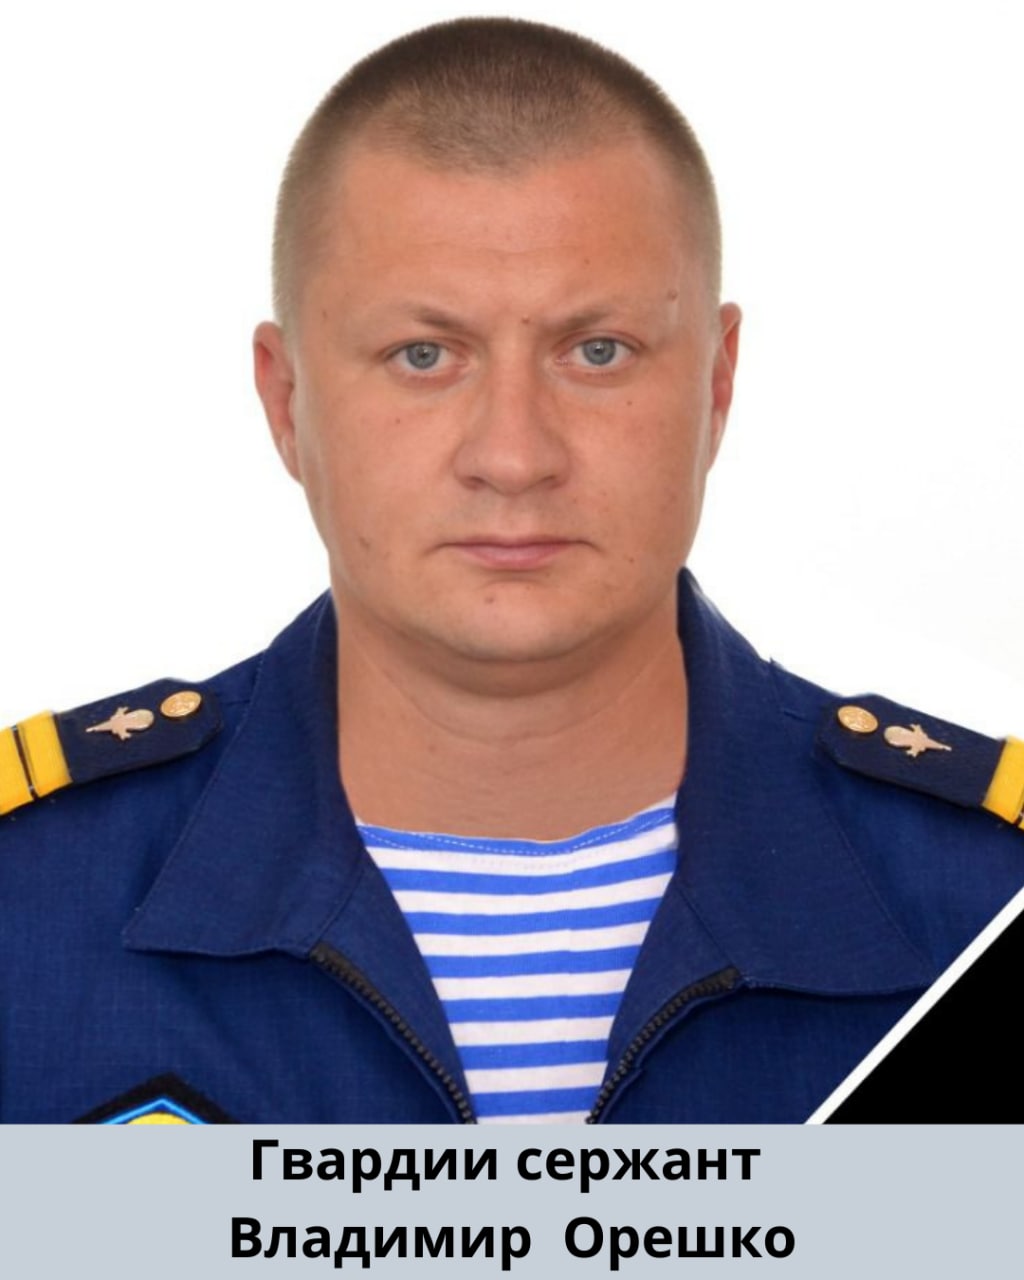 Андрей Бурлаков майор